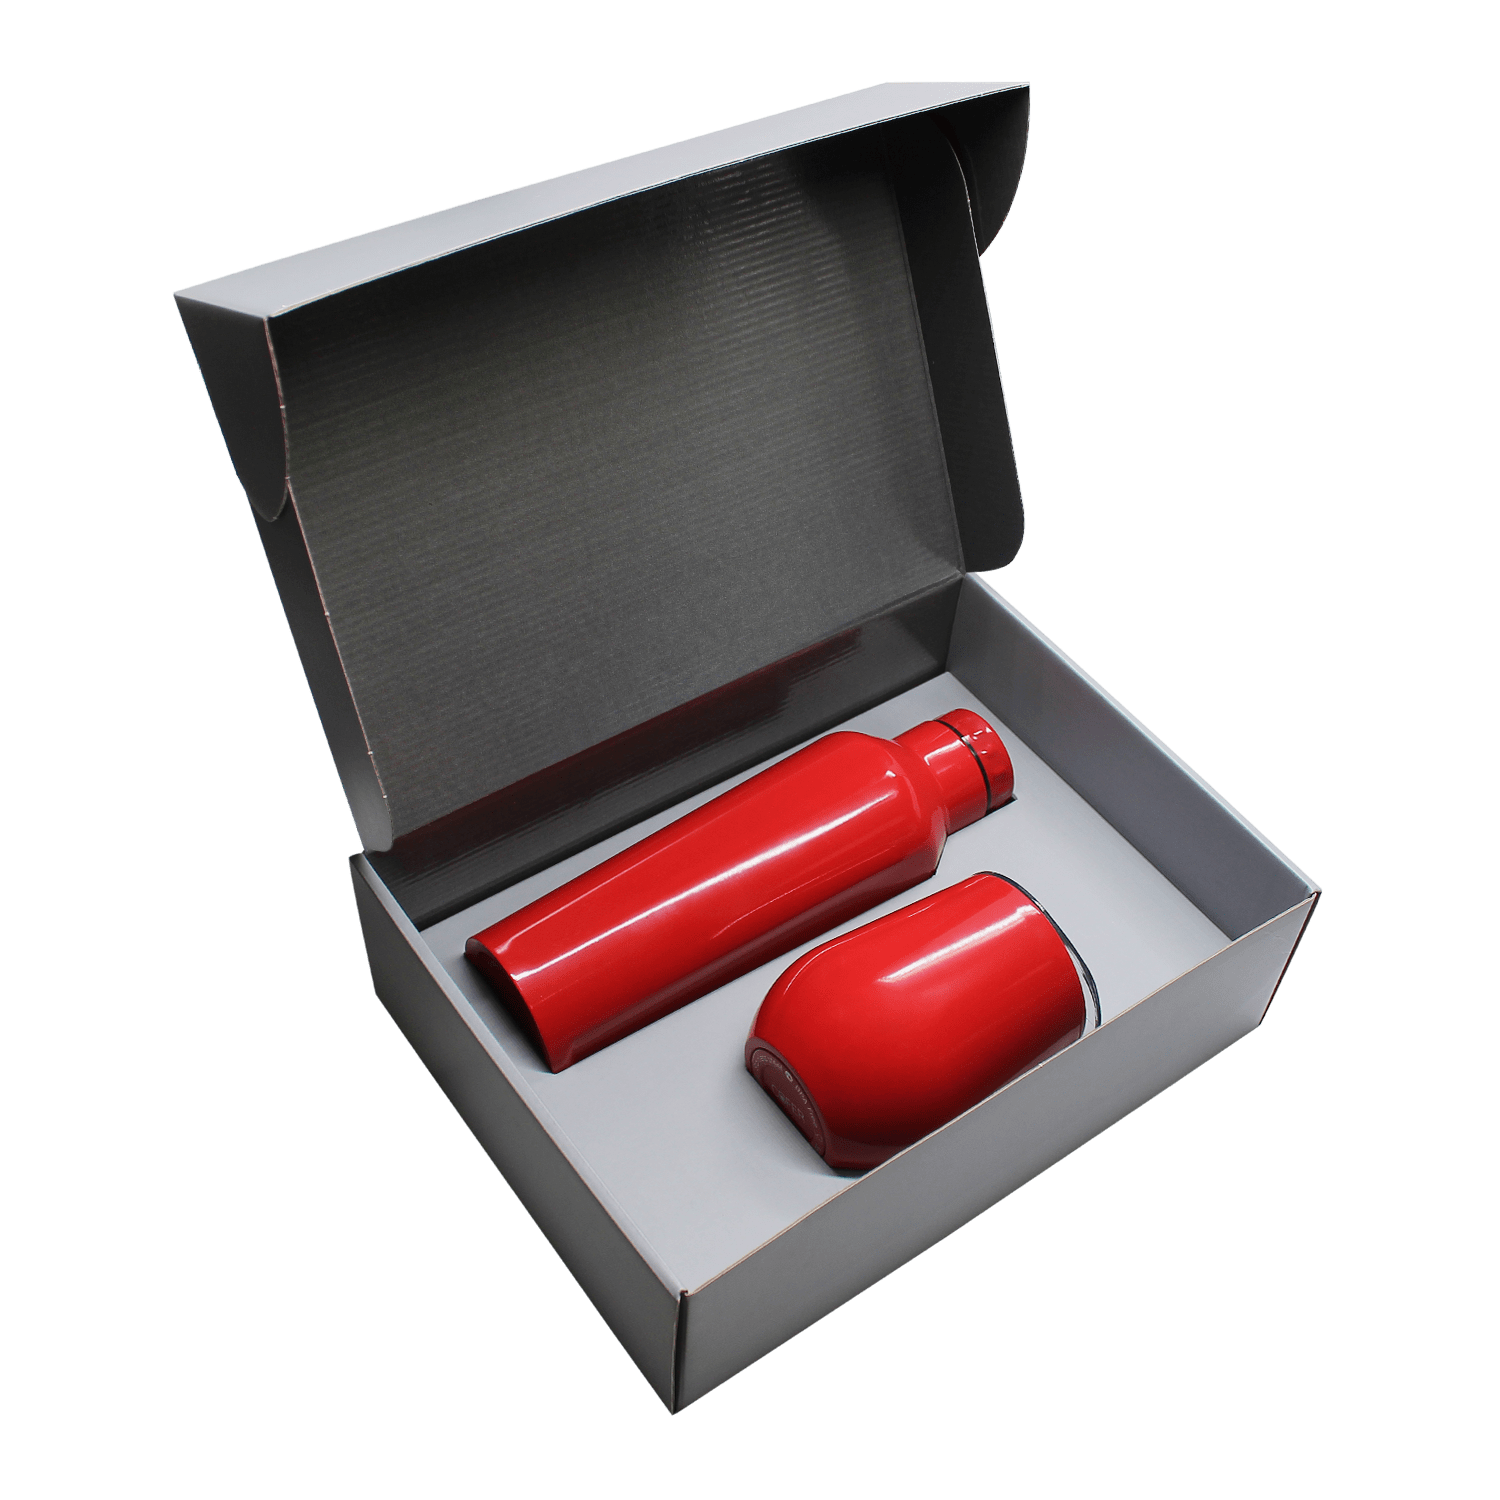 Набор Edge Box C (красный), красный, металл, микрогофрокартон